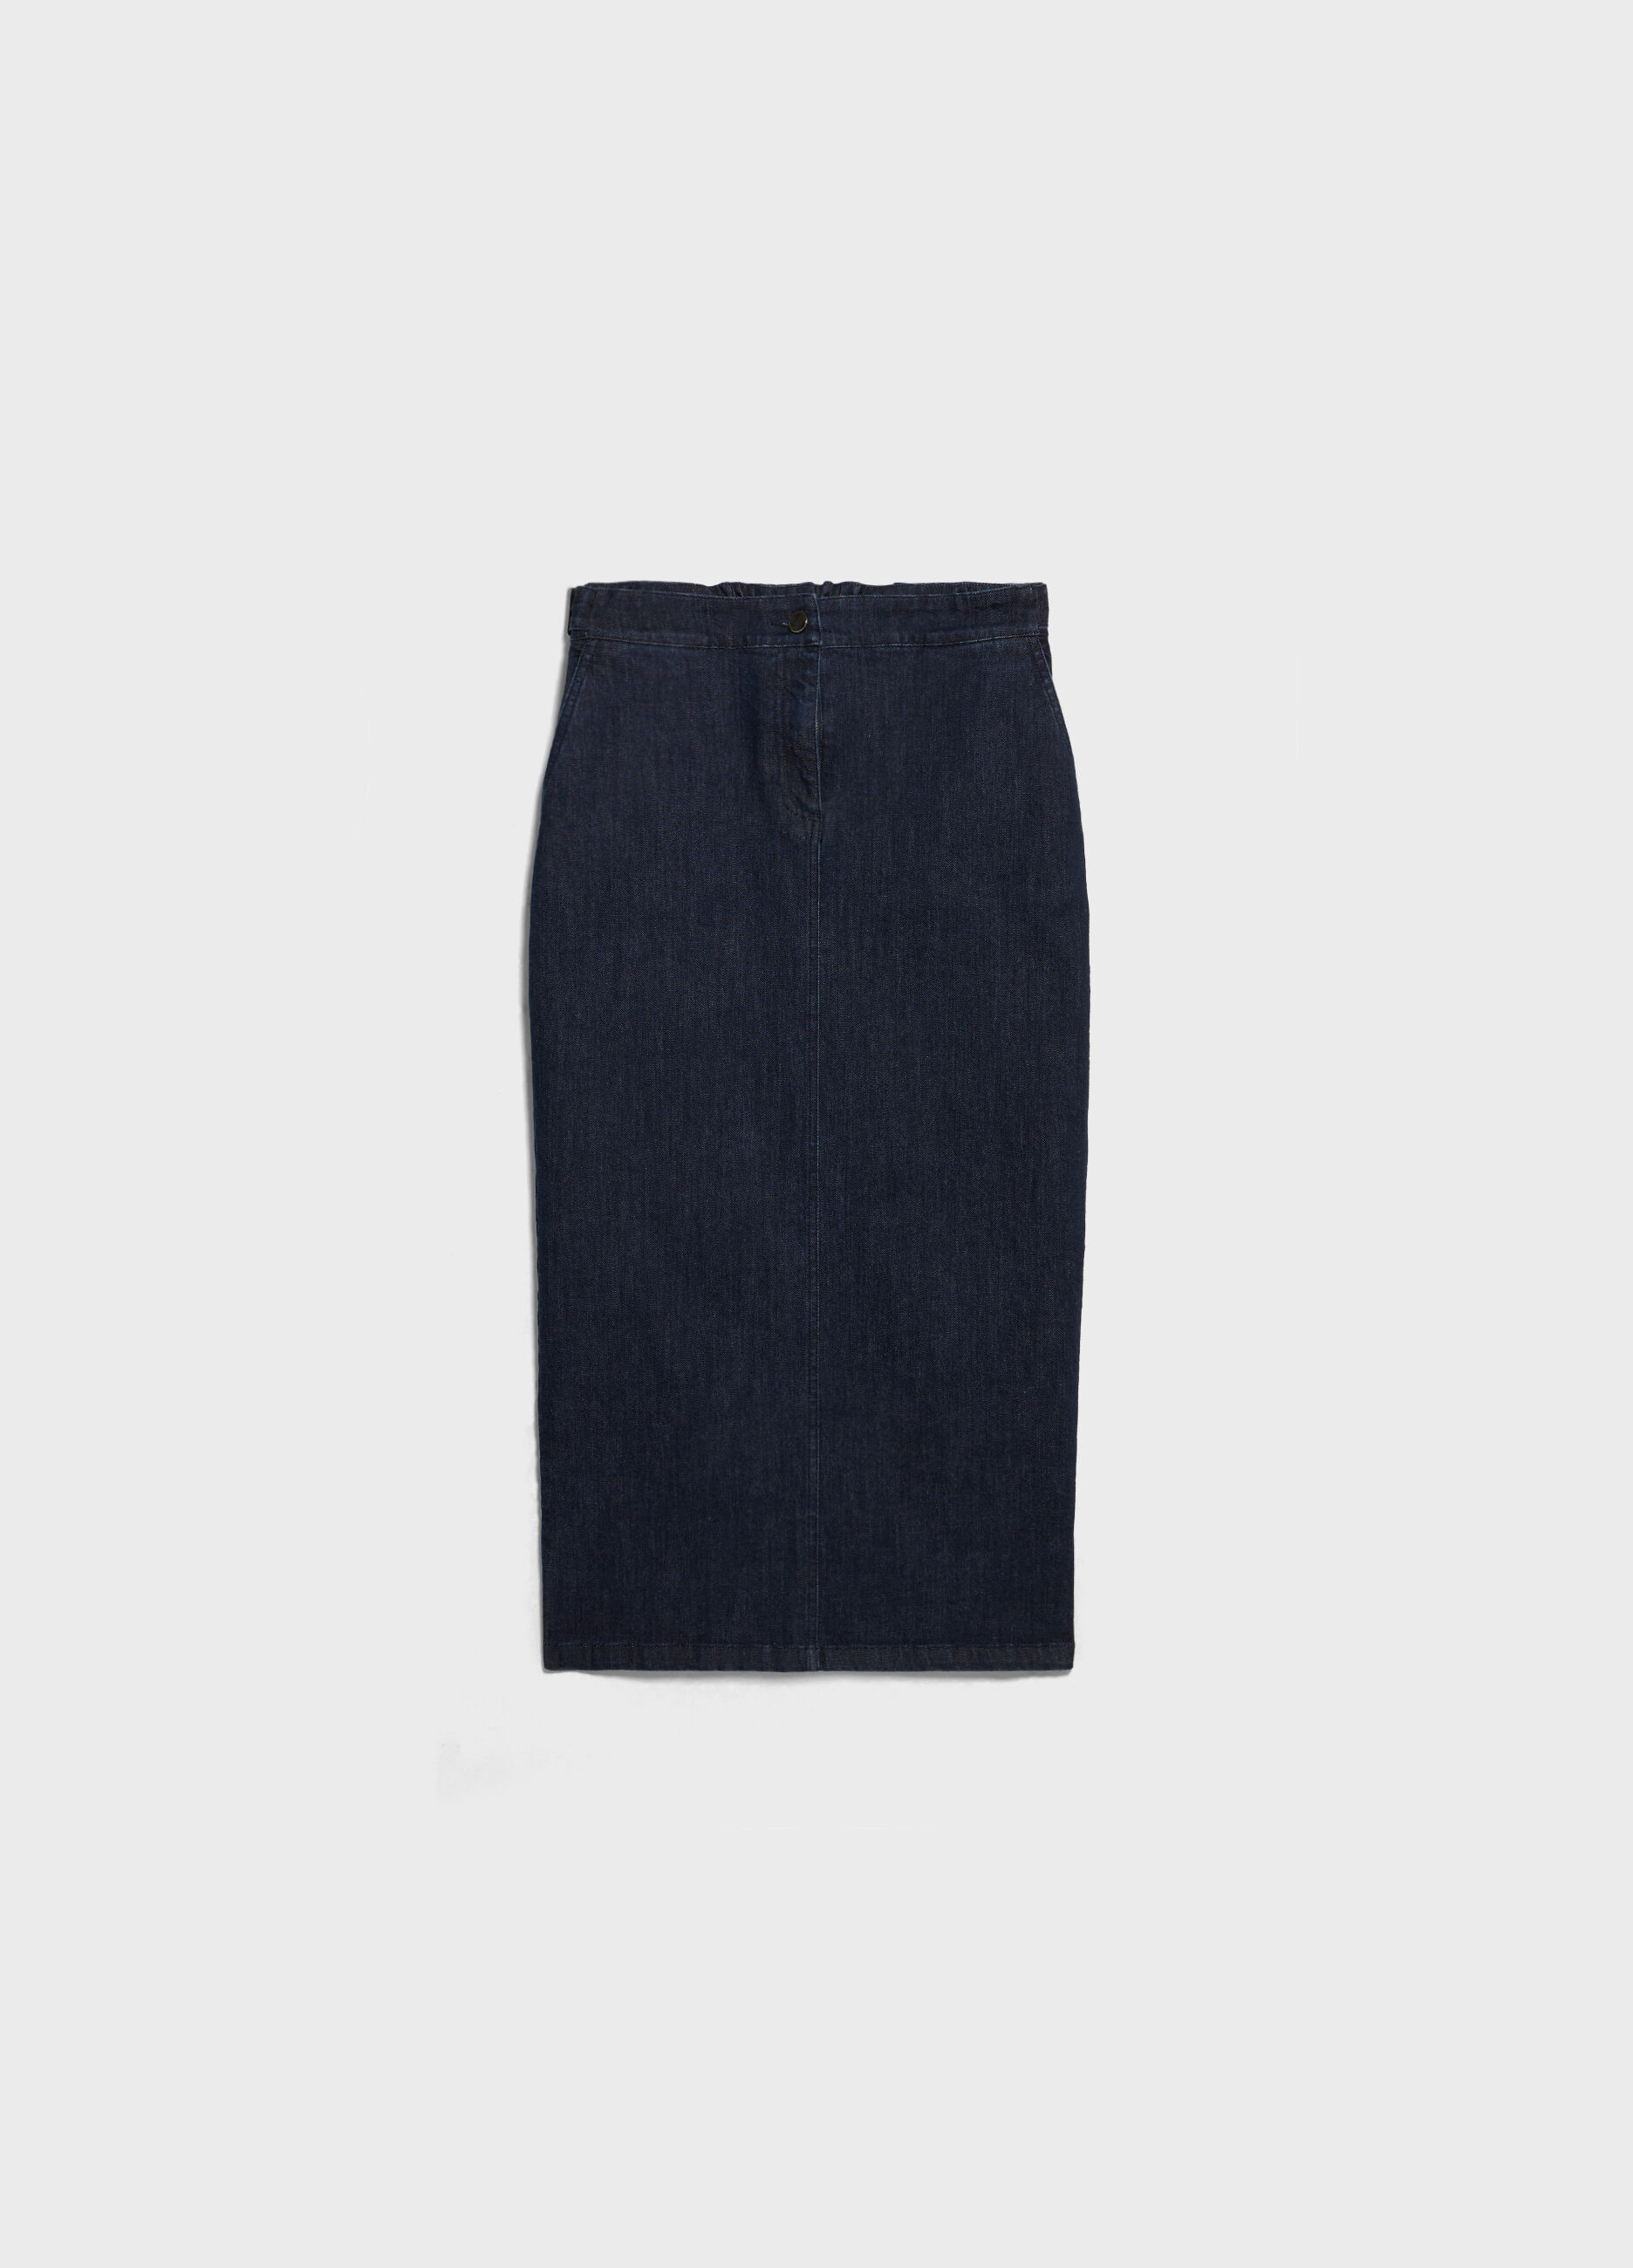 Long denim skirt with slit.